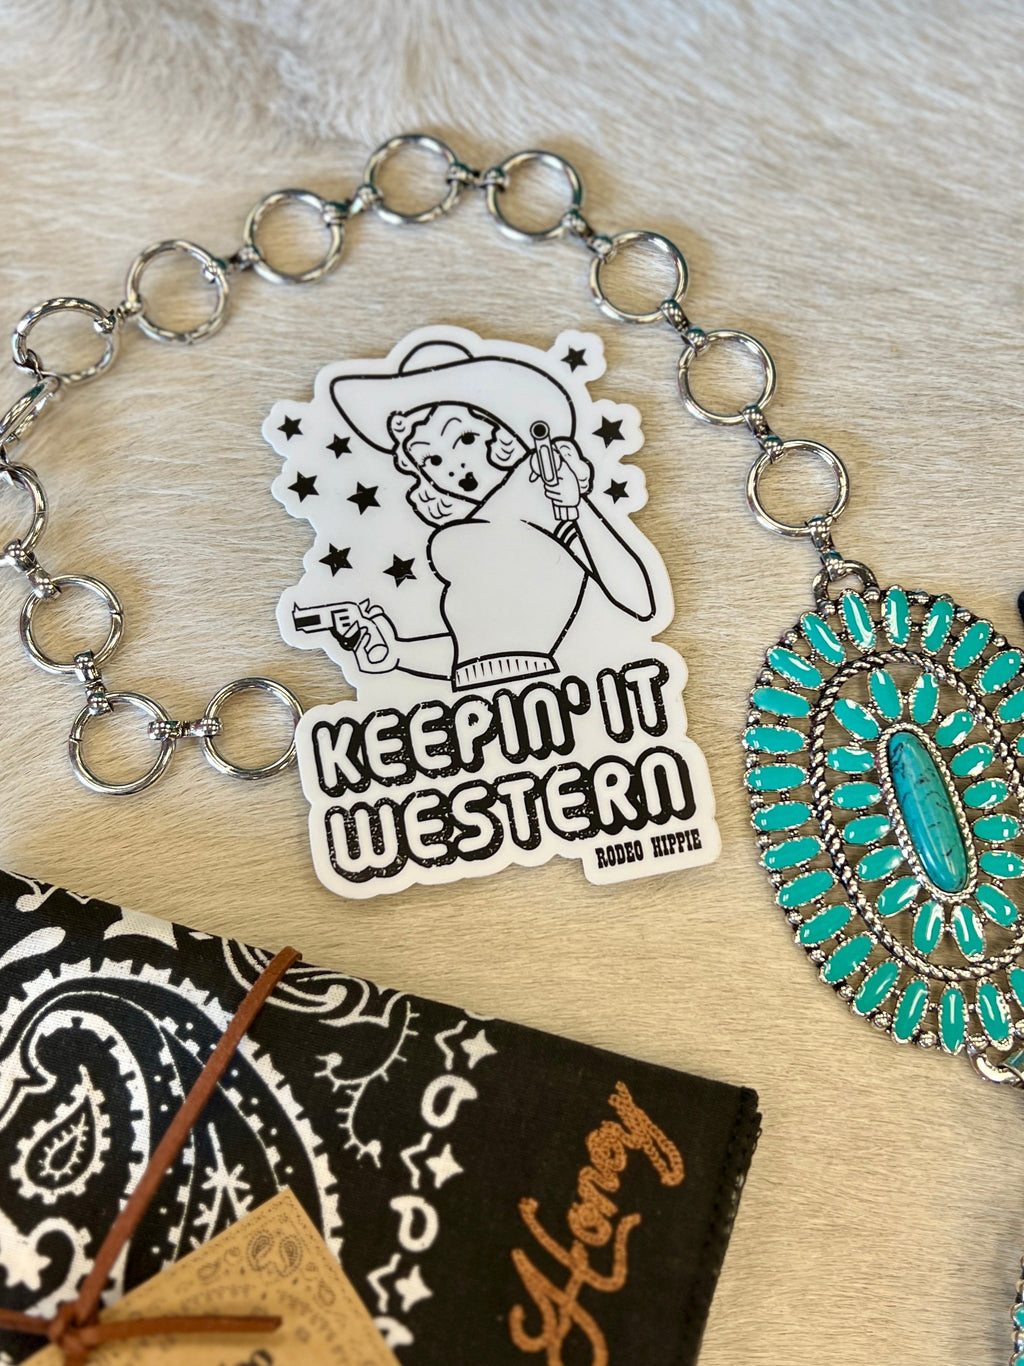 Keepin' it Western Sticker | gussieduponline